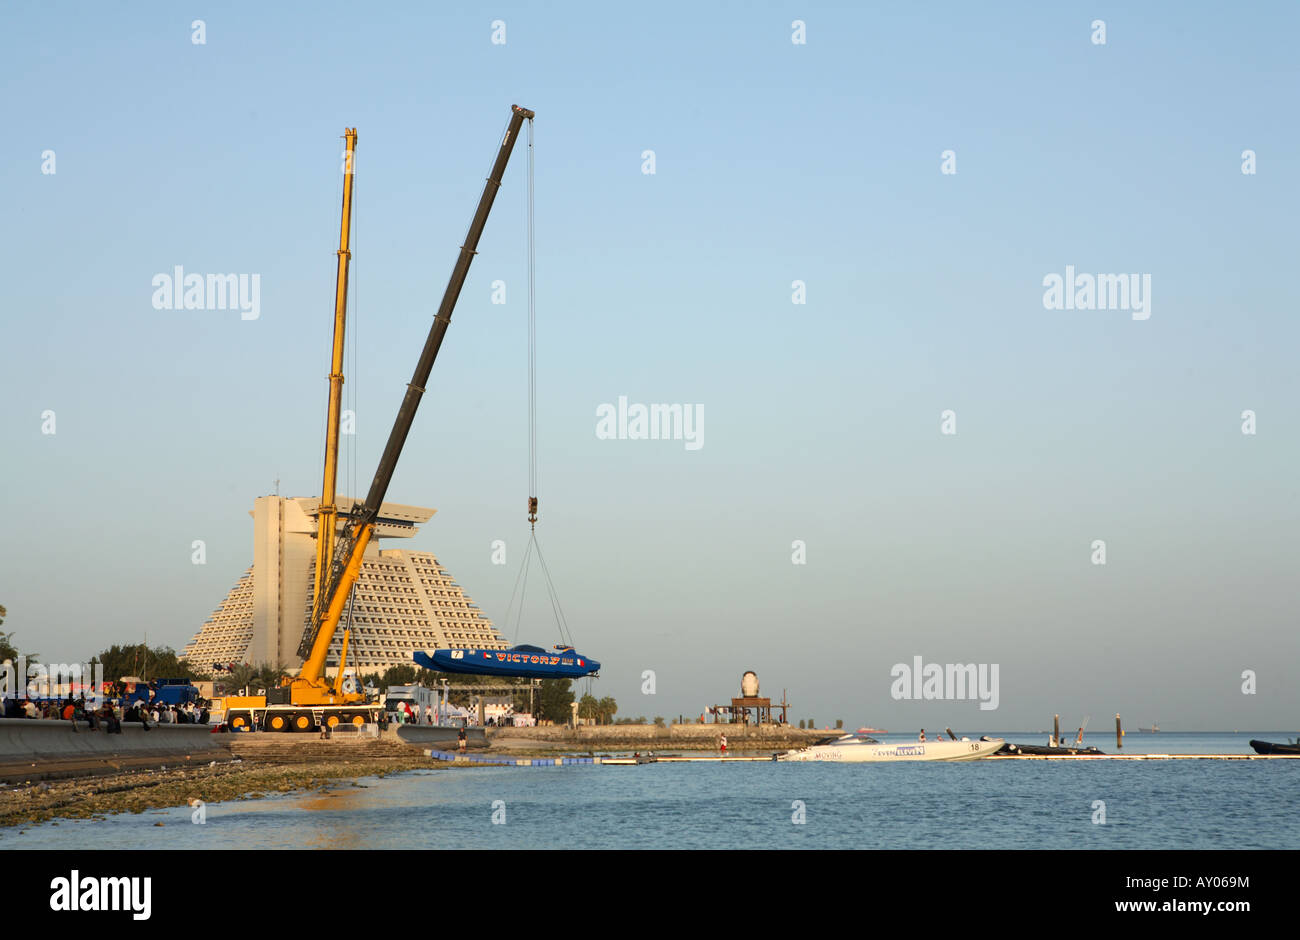 La F1 power boat provenienti dagli Emirati Arabi Uniti Victory Team sollevato dall'acqua di Doha Foto Stock